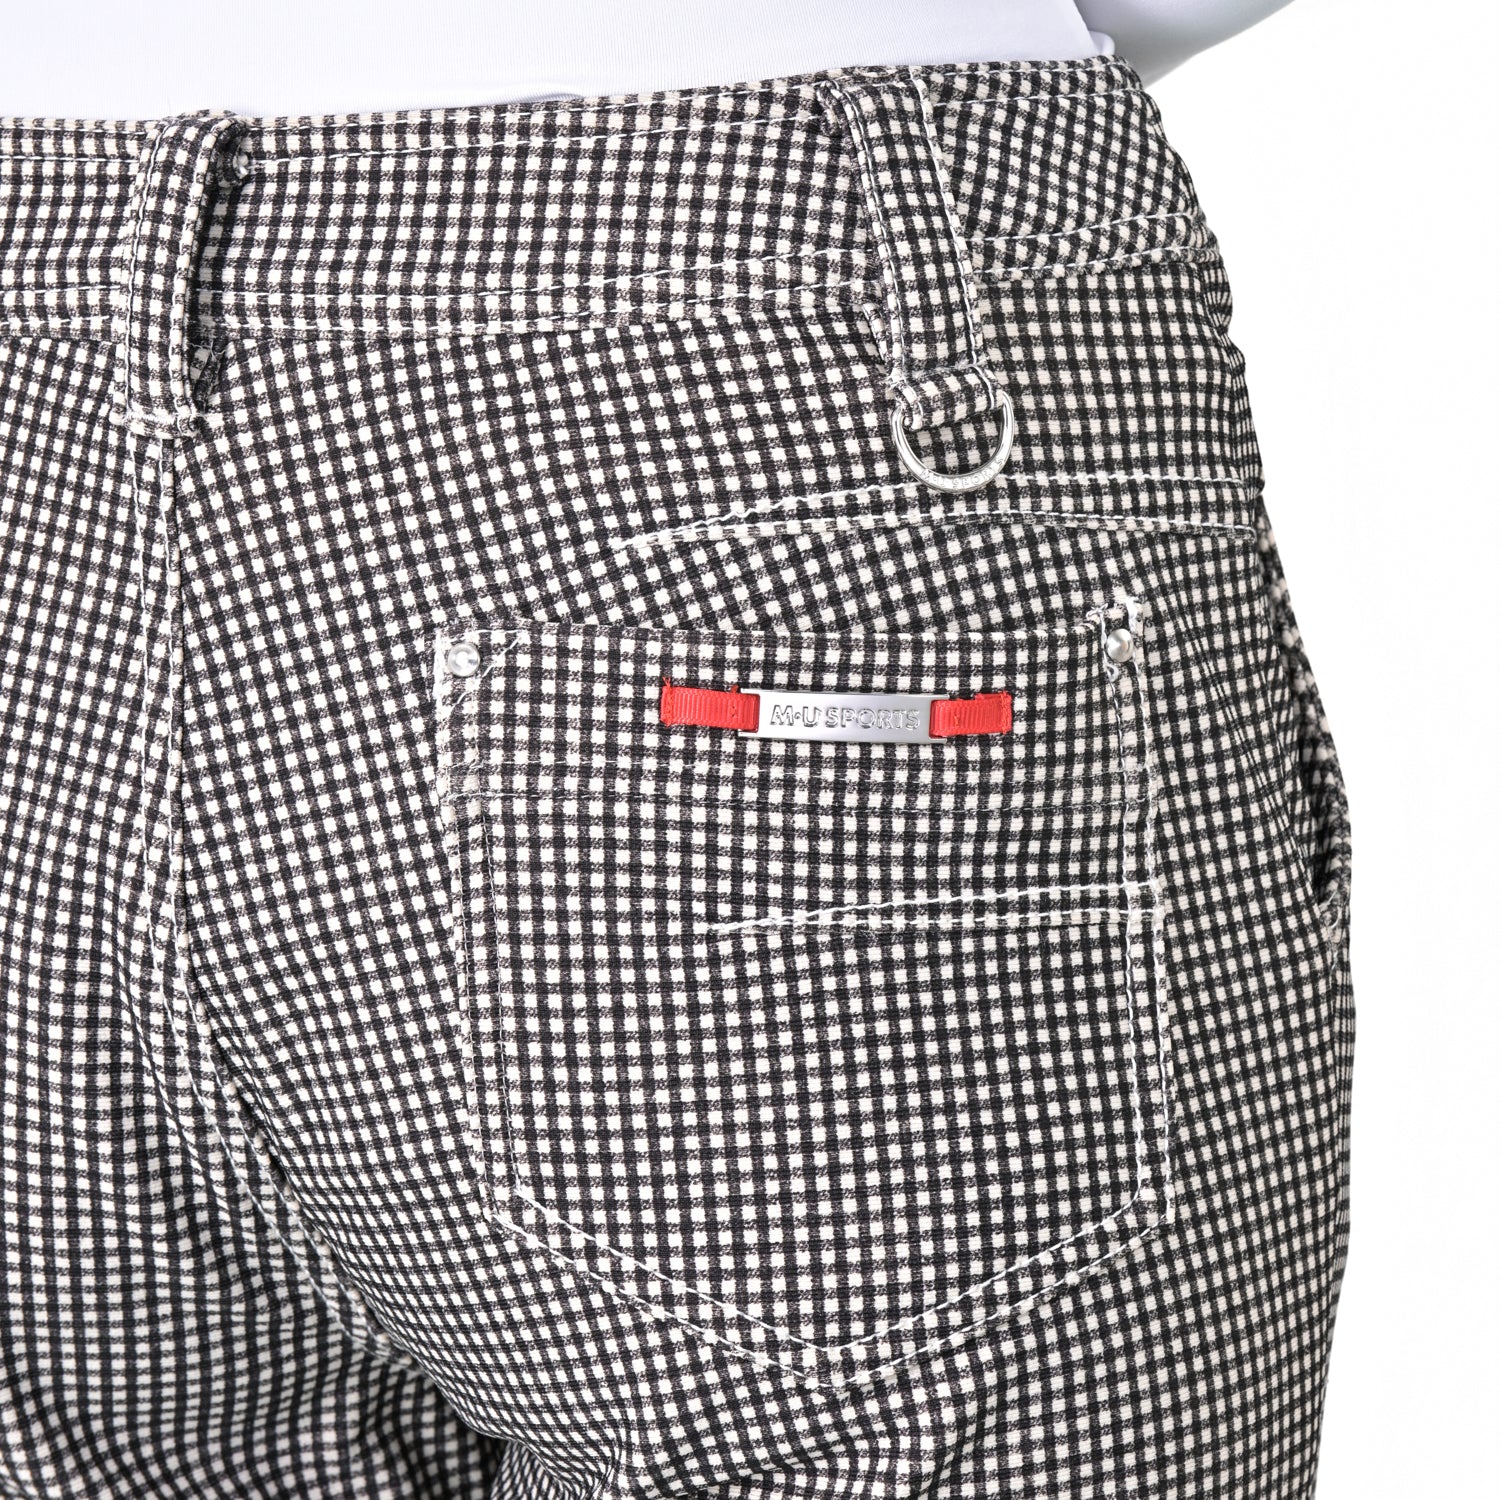 高張力格紋褲 (701J7516)